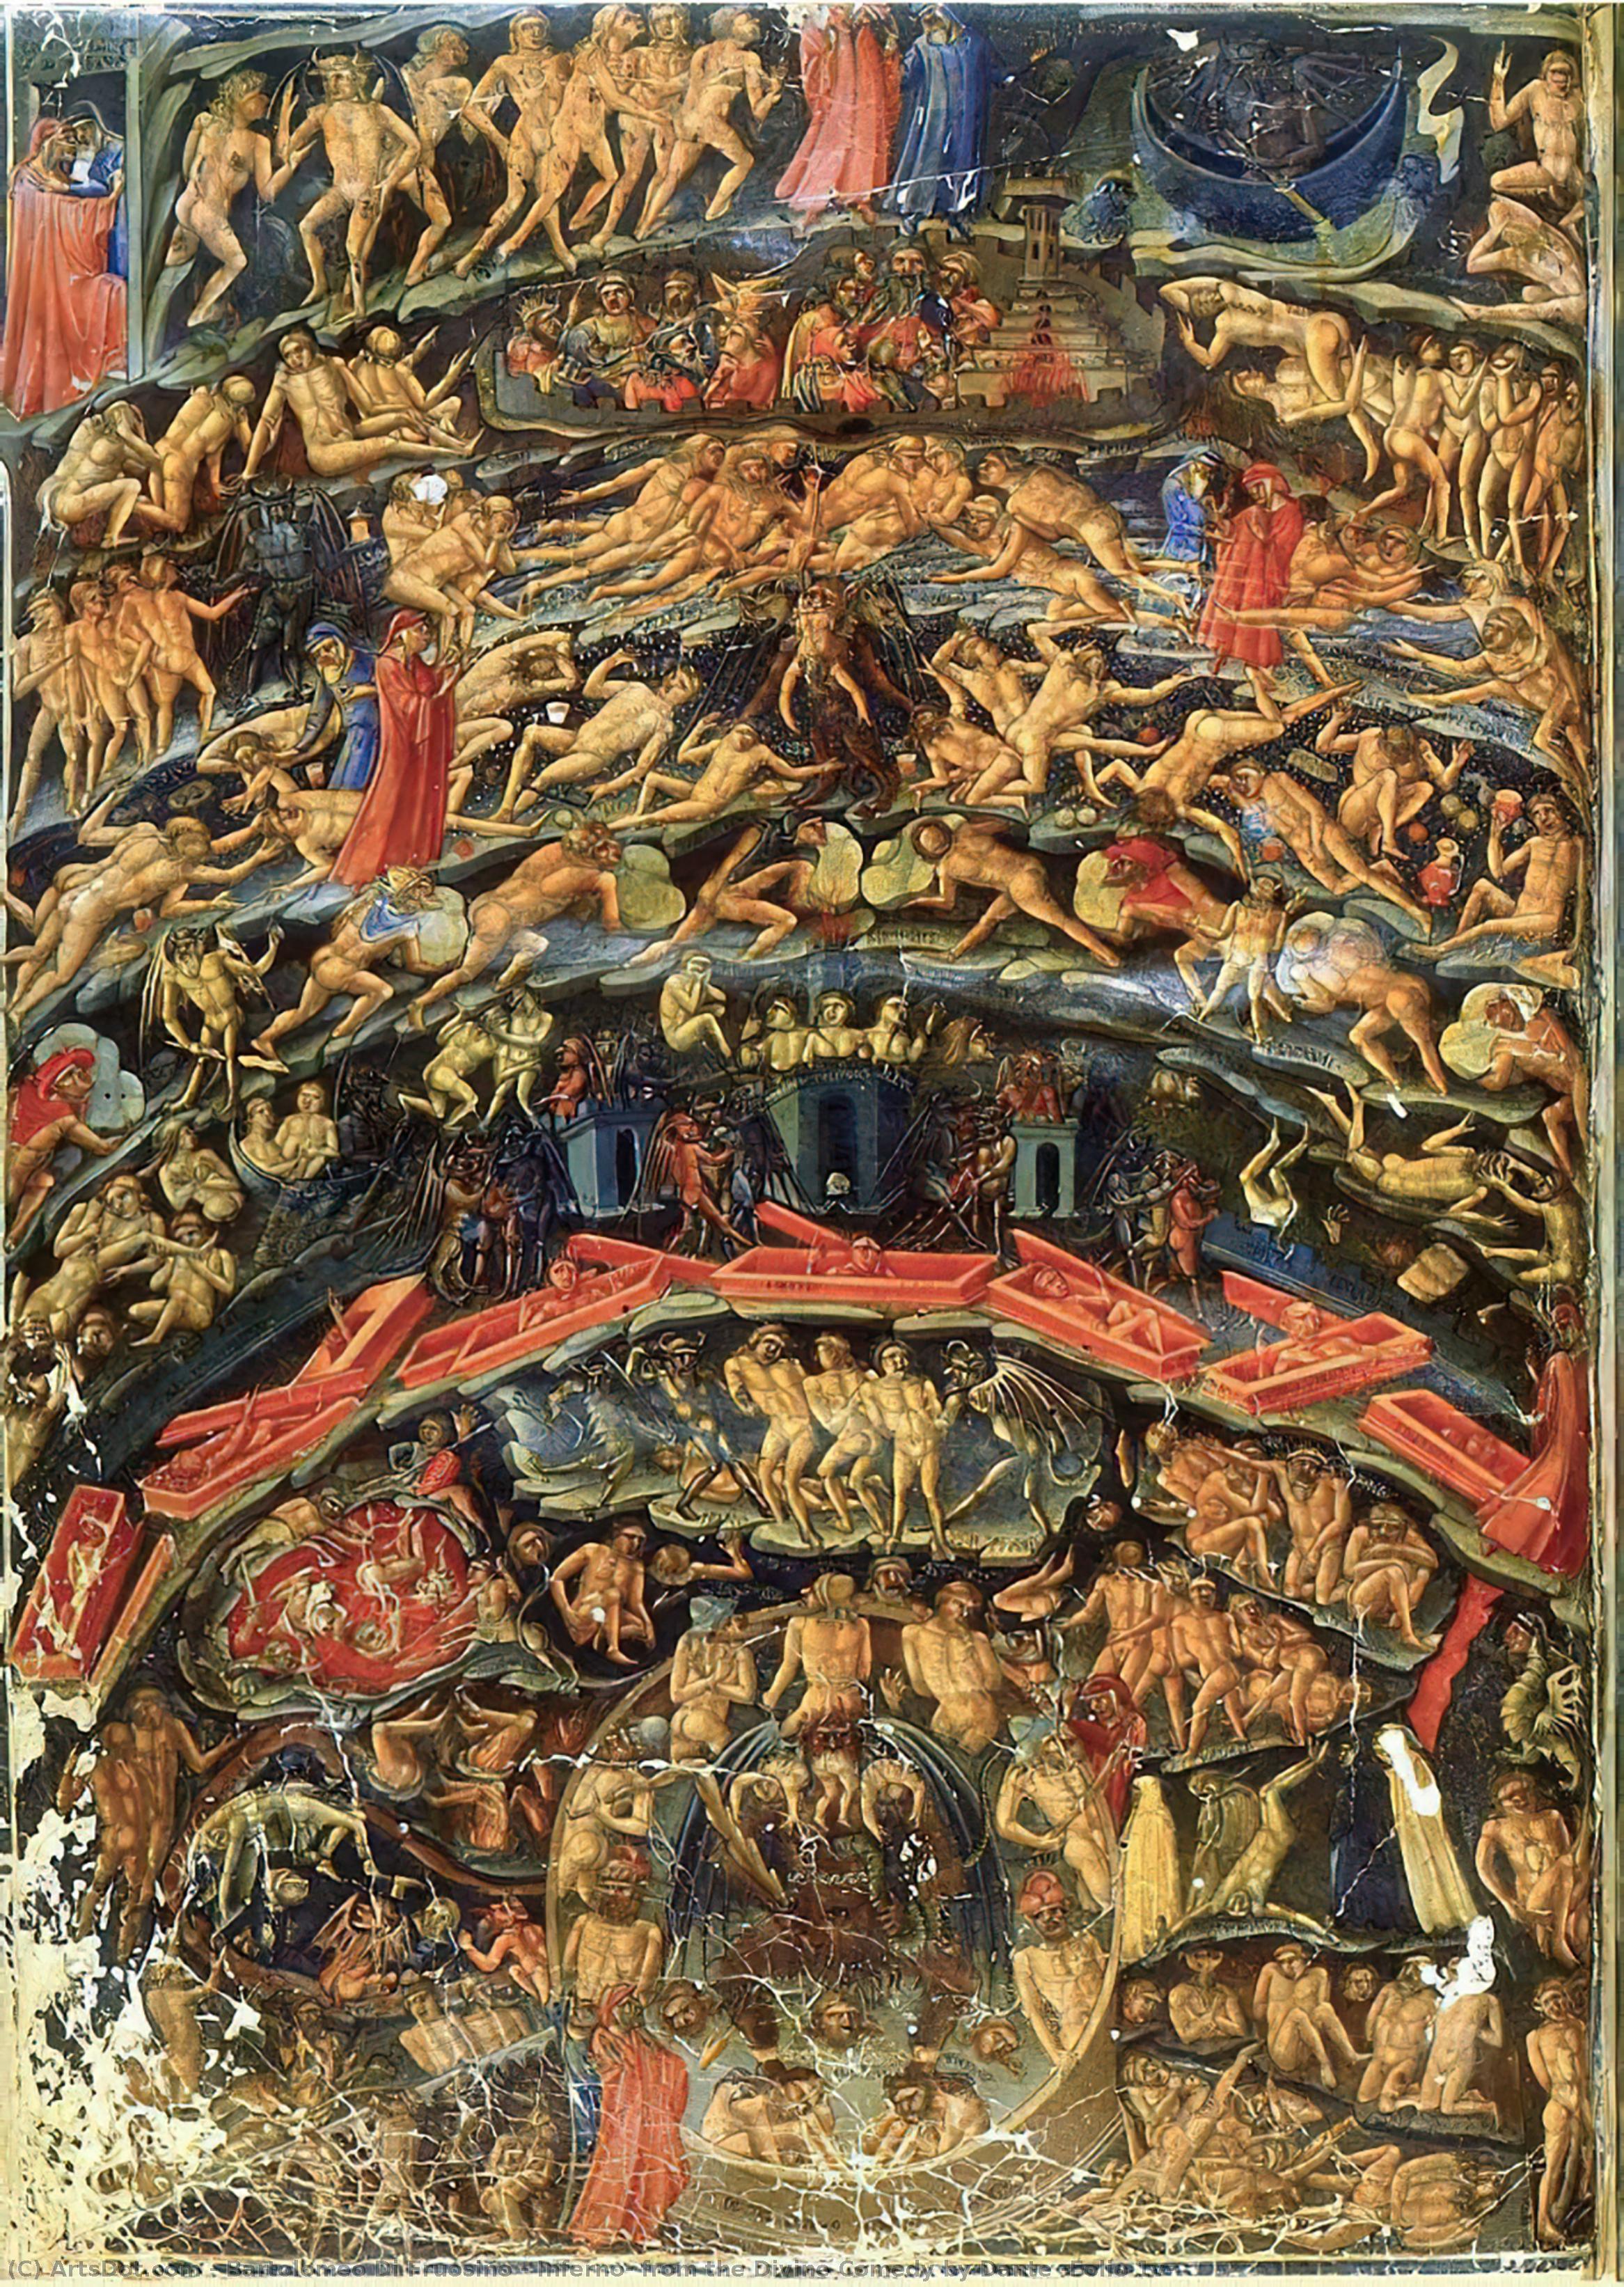 Acheter Reproductions D'art De Musée Inferno, de la Divine Comédie par Dante (Folio 1v), 1430 de Bartolomeo Di Fruosino (1366-1441, Italy) | ArtsDot.com